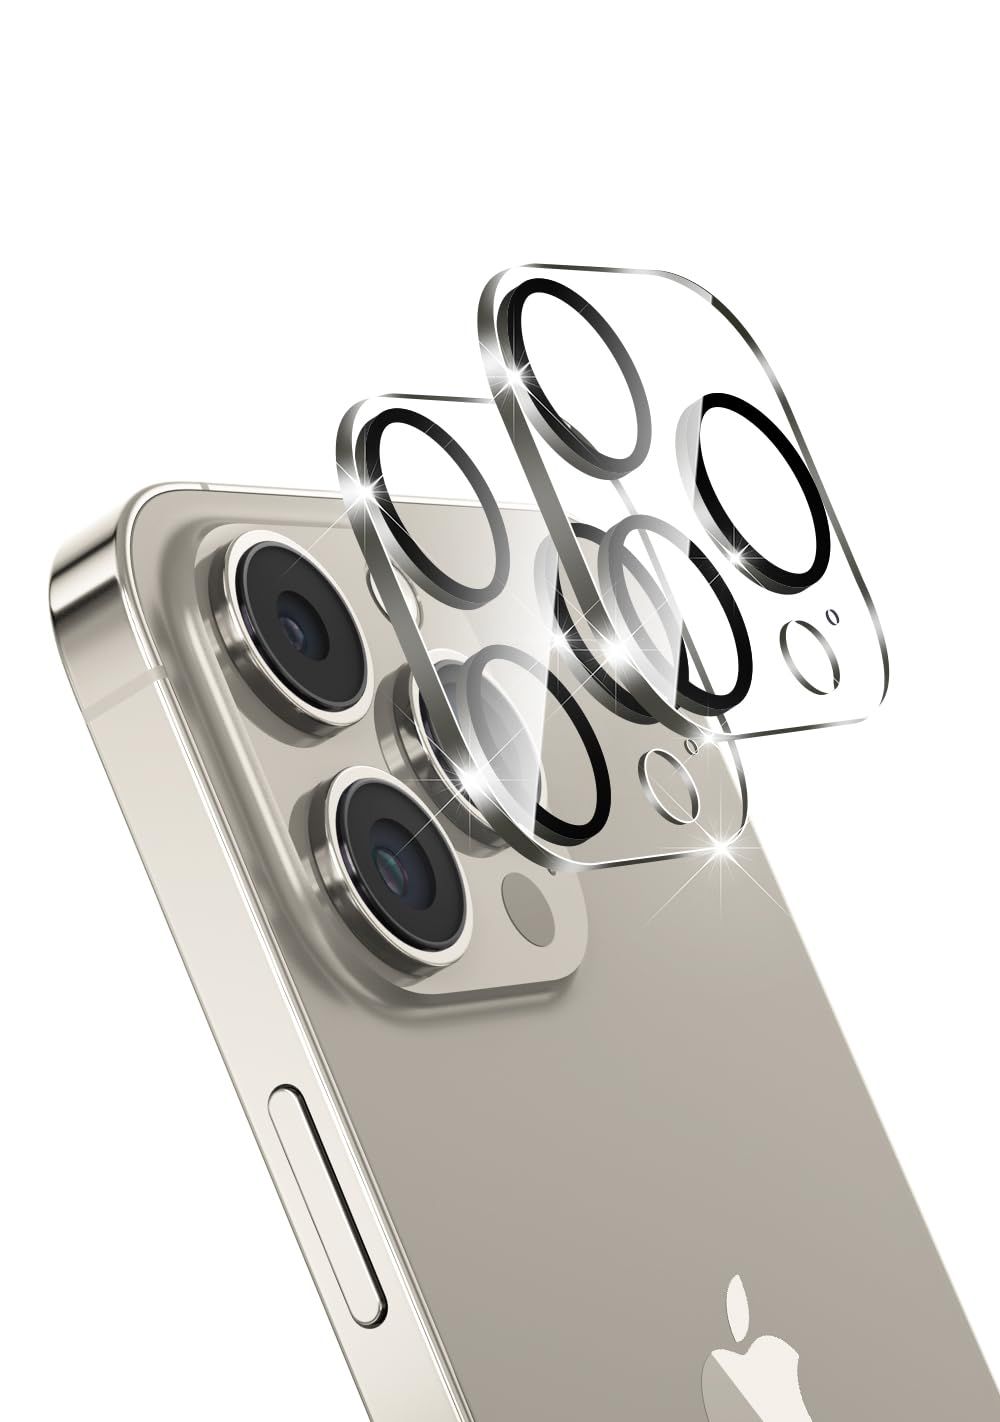 iPhone15 Pro/iPhone15 Pro Max対応カメラフィルム iPhone15Pro/iPhone15ProMax用 レンズ保護フィルム アイフォン15プロ/アイフォン15プロマックス用 カメラ保護 日本旭硝子素材 強化ガラス 硬度9H